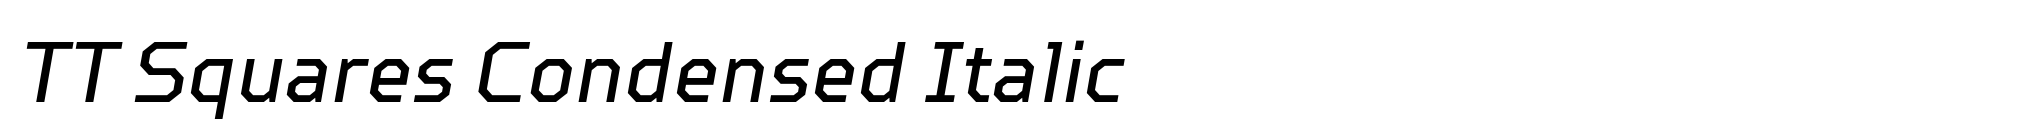 TT Squares Condensed Italic image